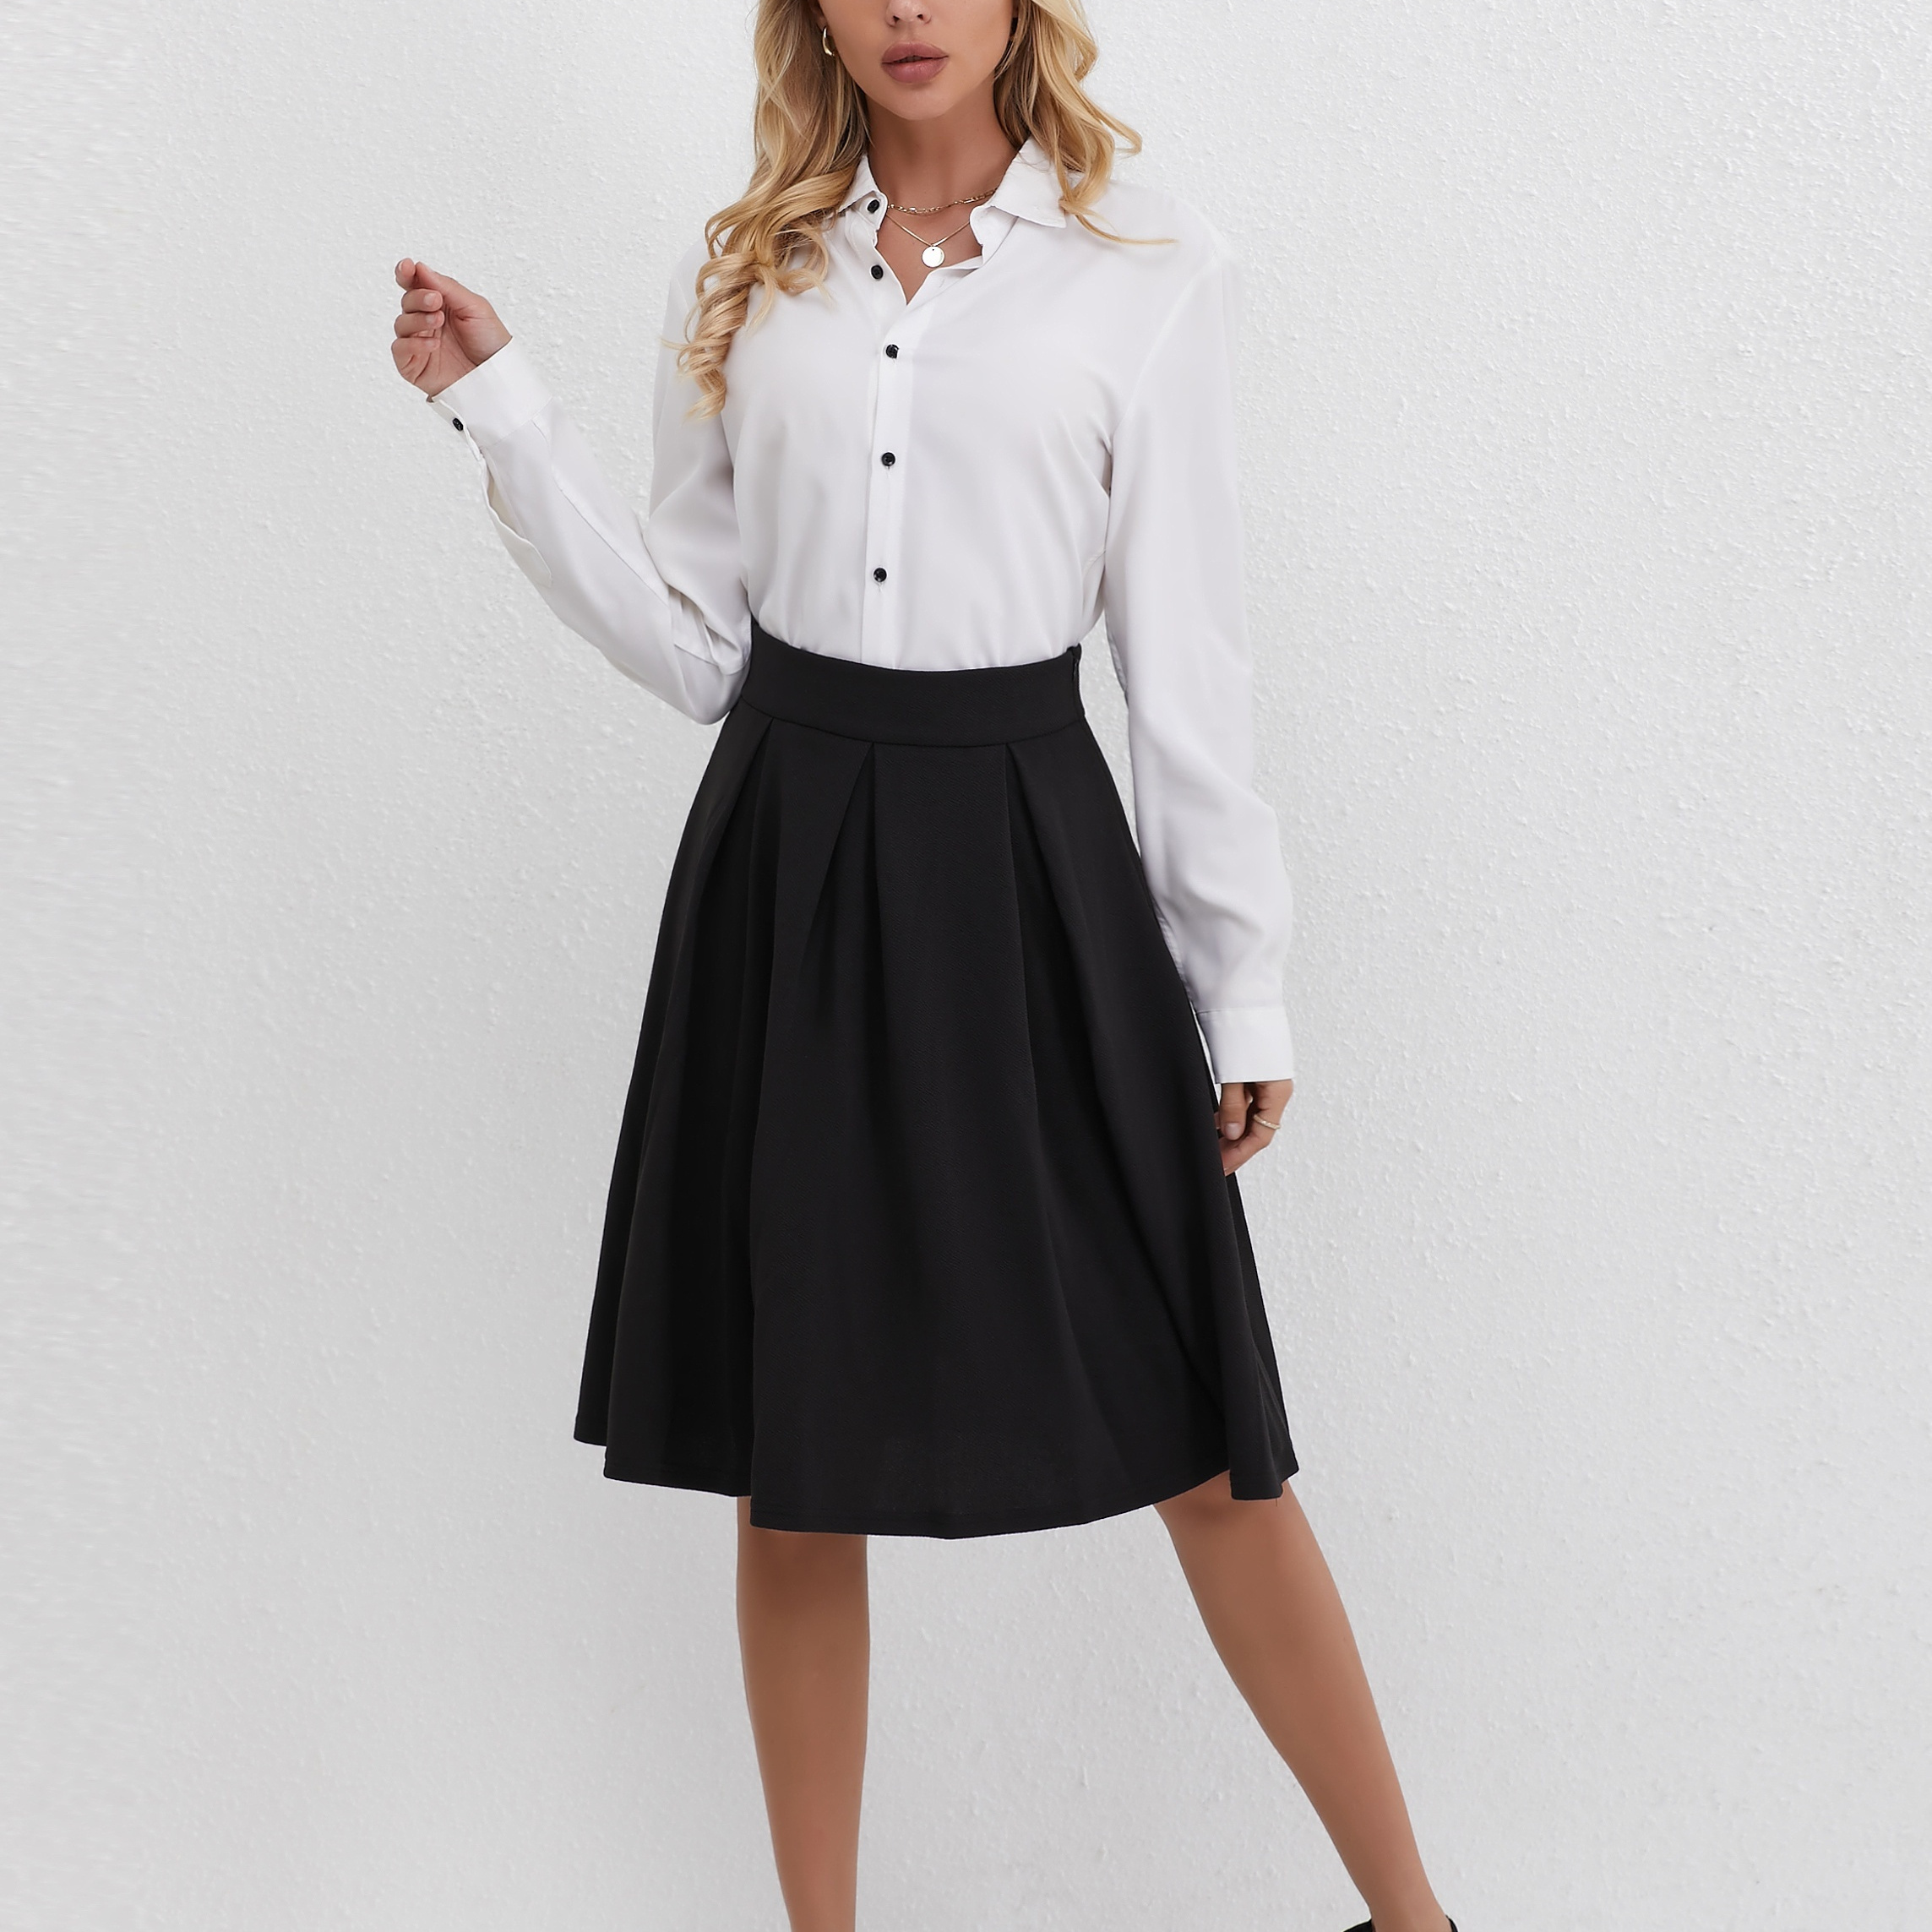 

Solid High Waist Swing Skirt, Elegant Aline Work Skirt For Spring & Fall, Women's Clothing